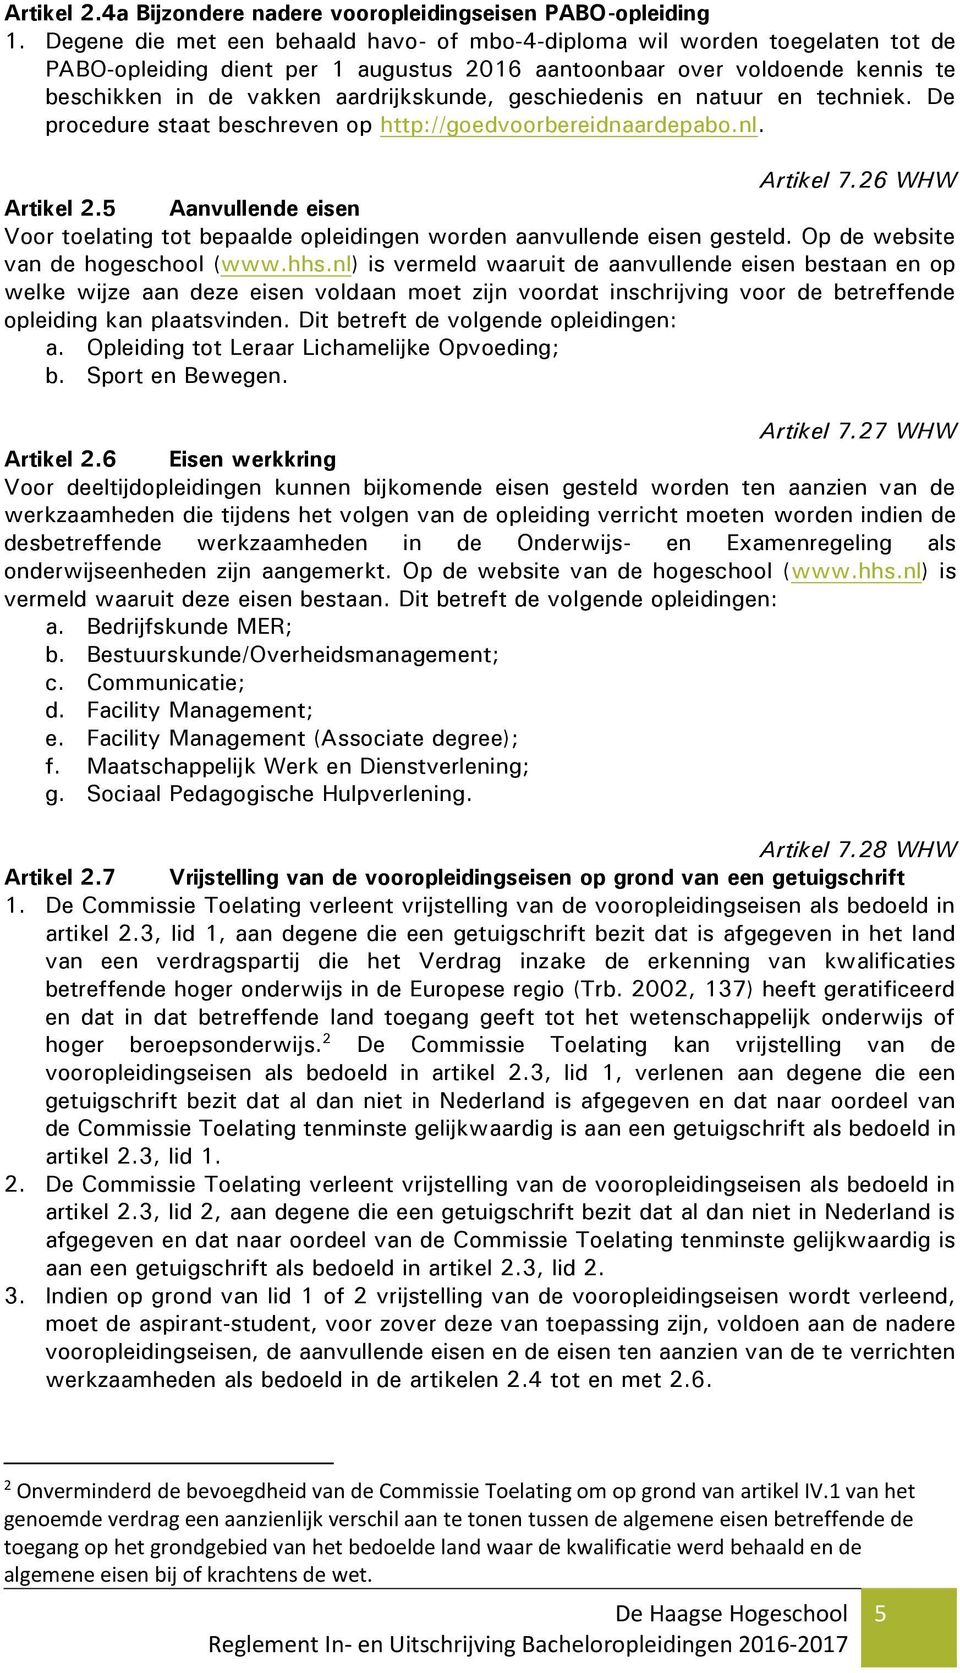 geschiedenis en natuur en techniek. De procedure staat beschreven op http://goedvoorbereidnaardepabo.nl. Artikel 7.26 WHW Artikel 2.